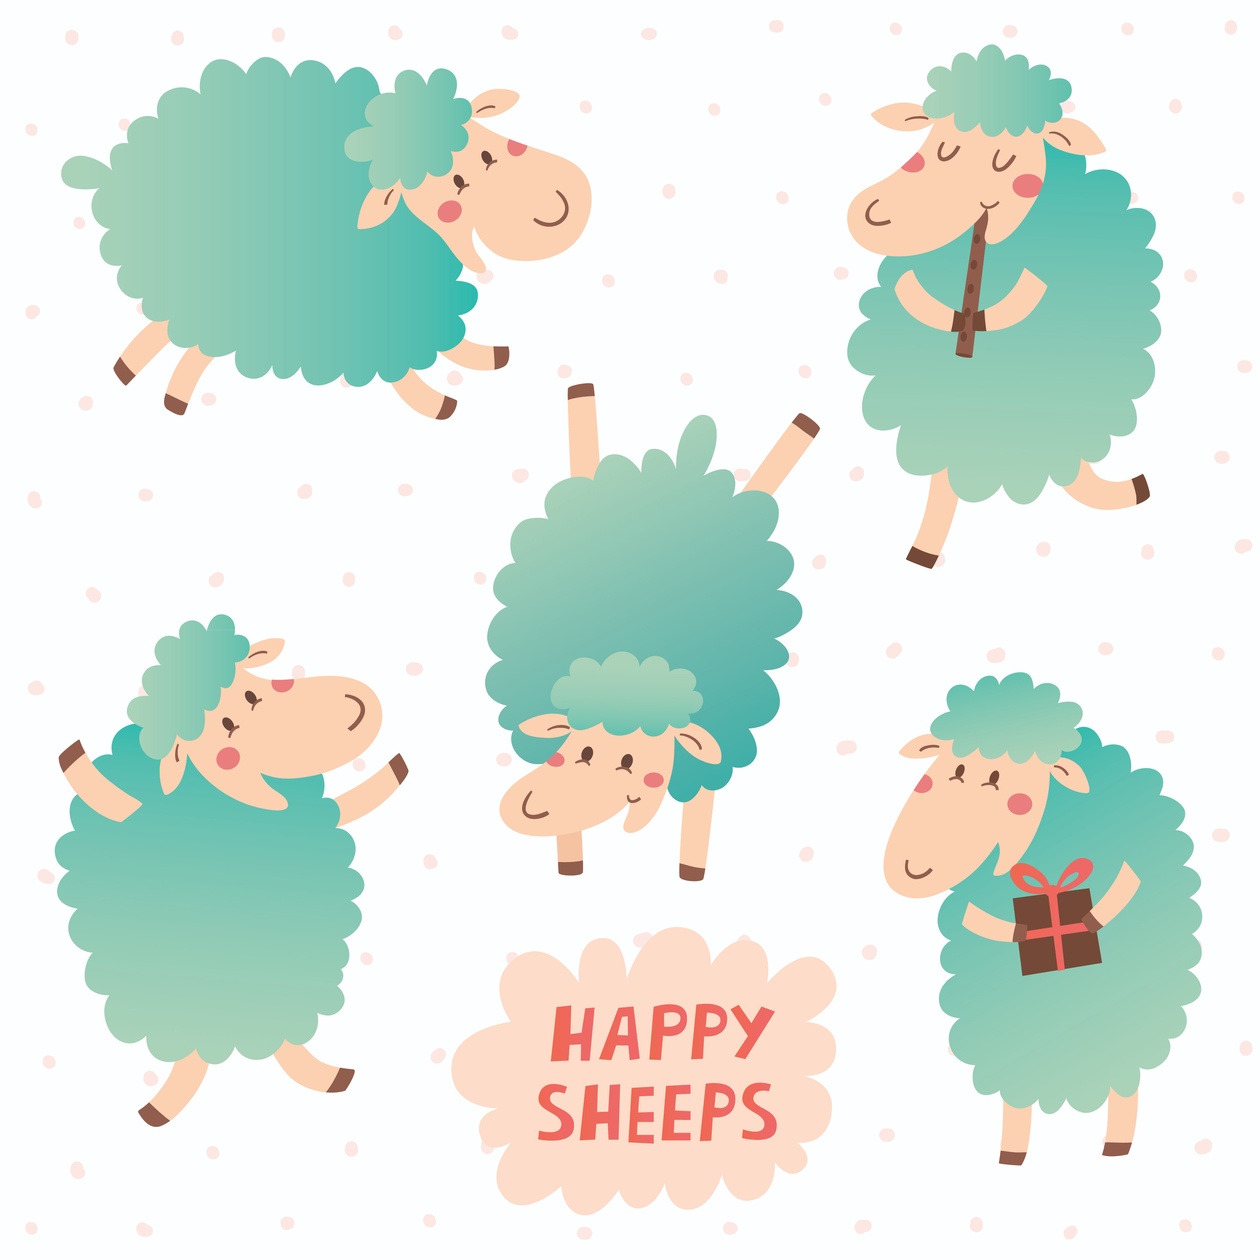 Happy sheeps Photoshop brush